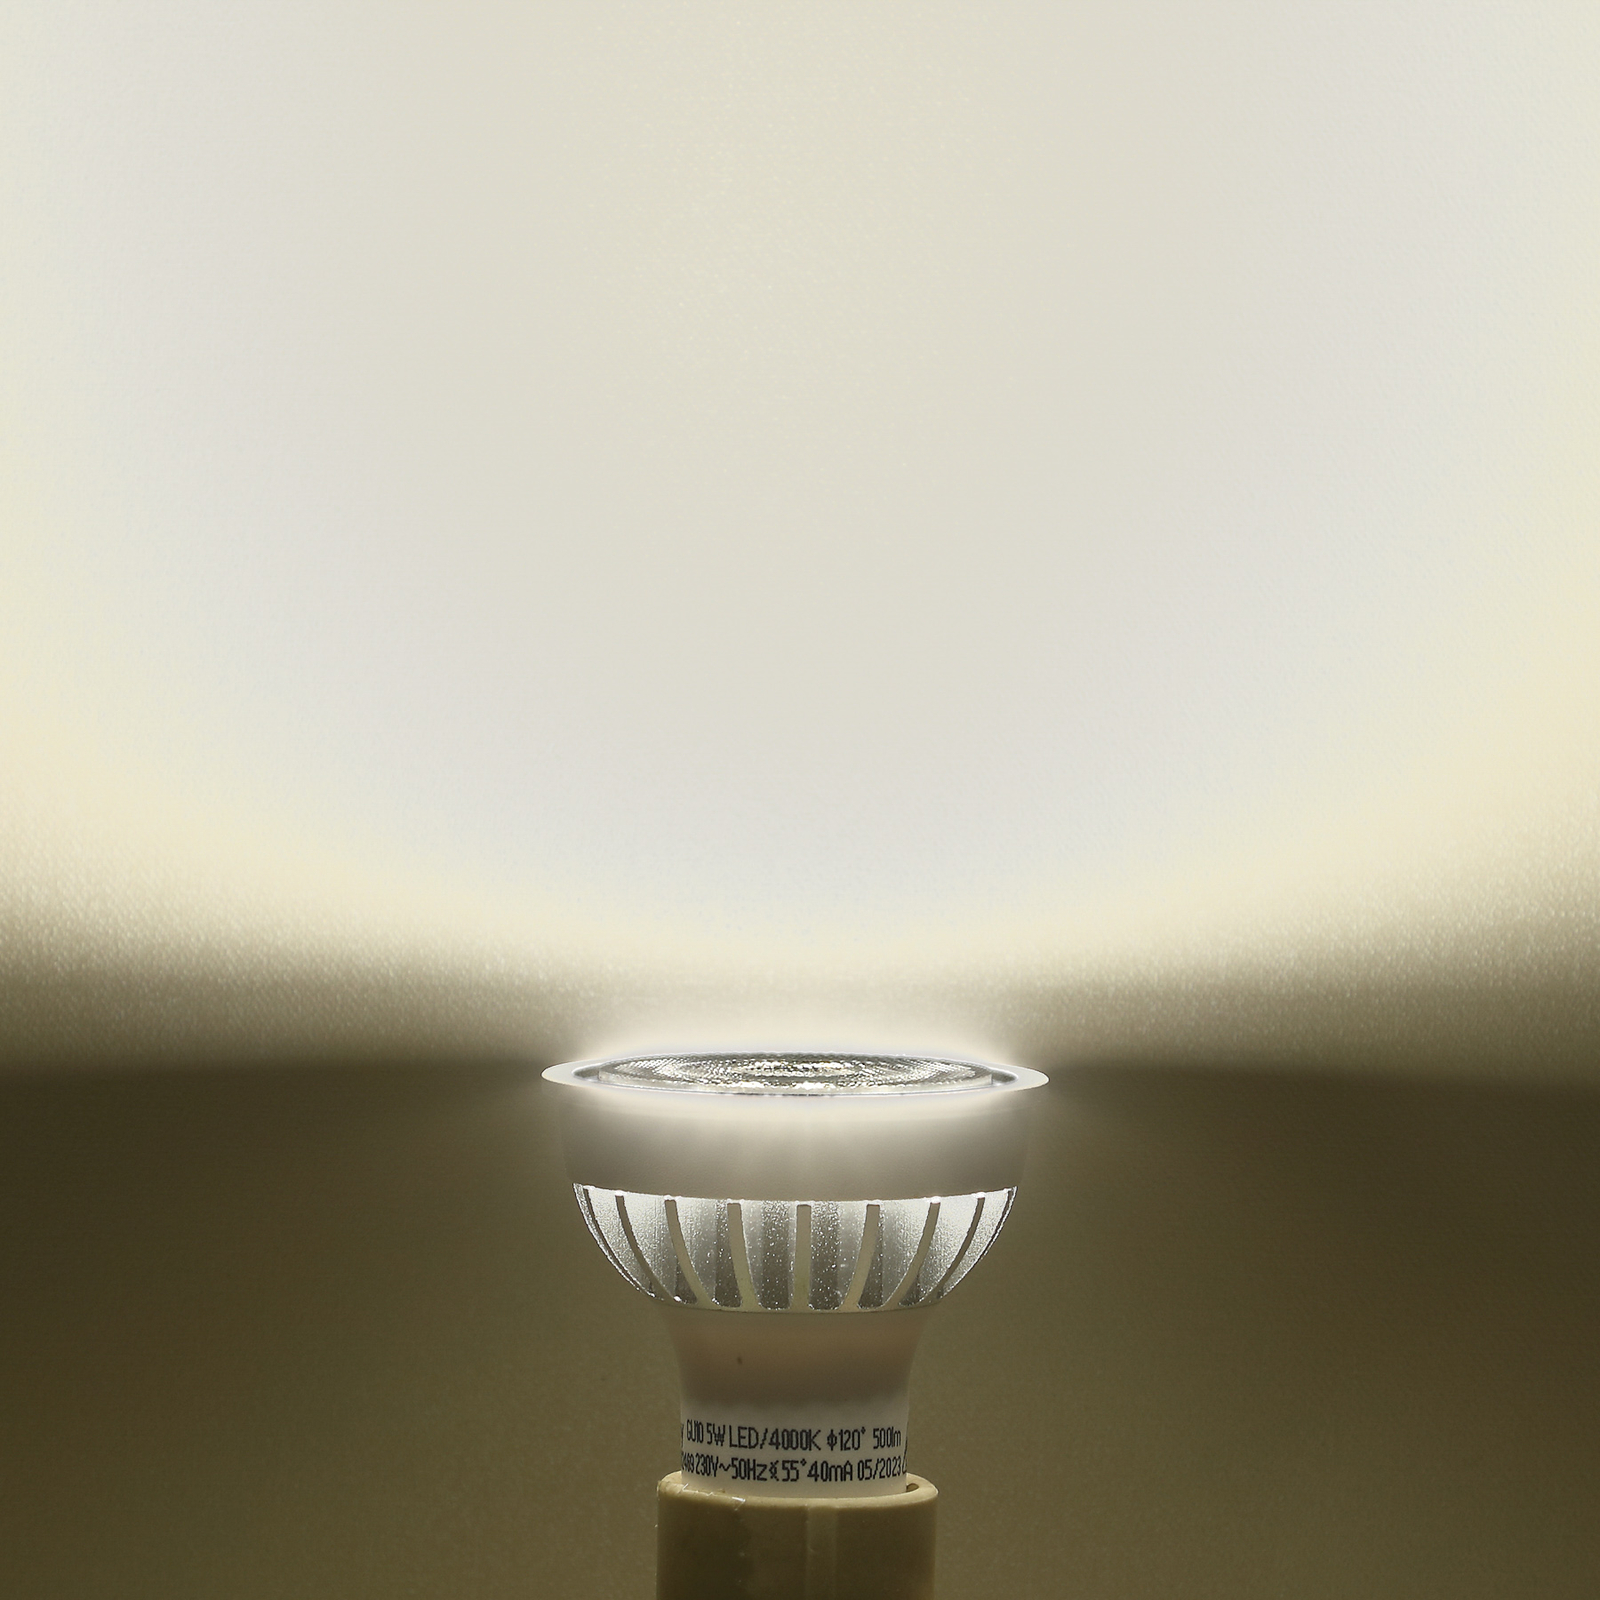 Lindby LED reflektor, GU10, 5 W, opal, 4000 K, 55°